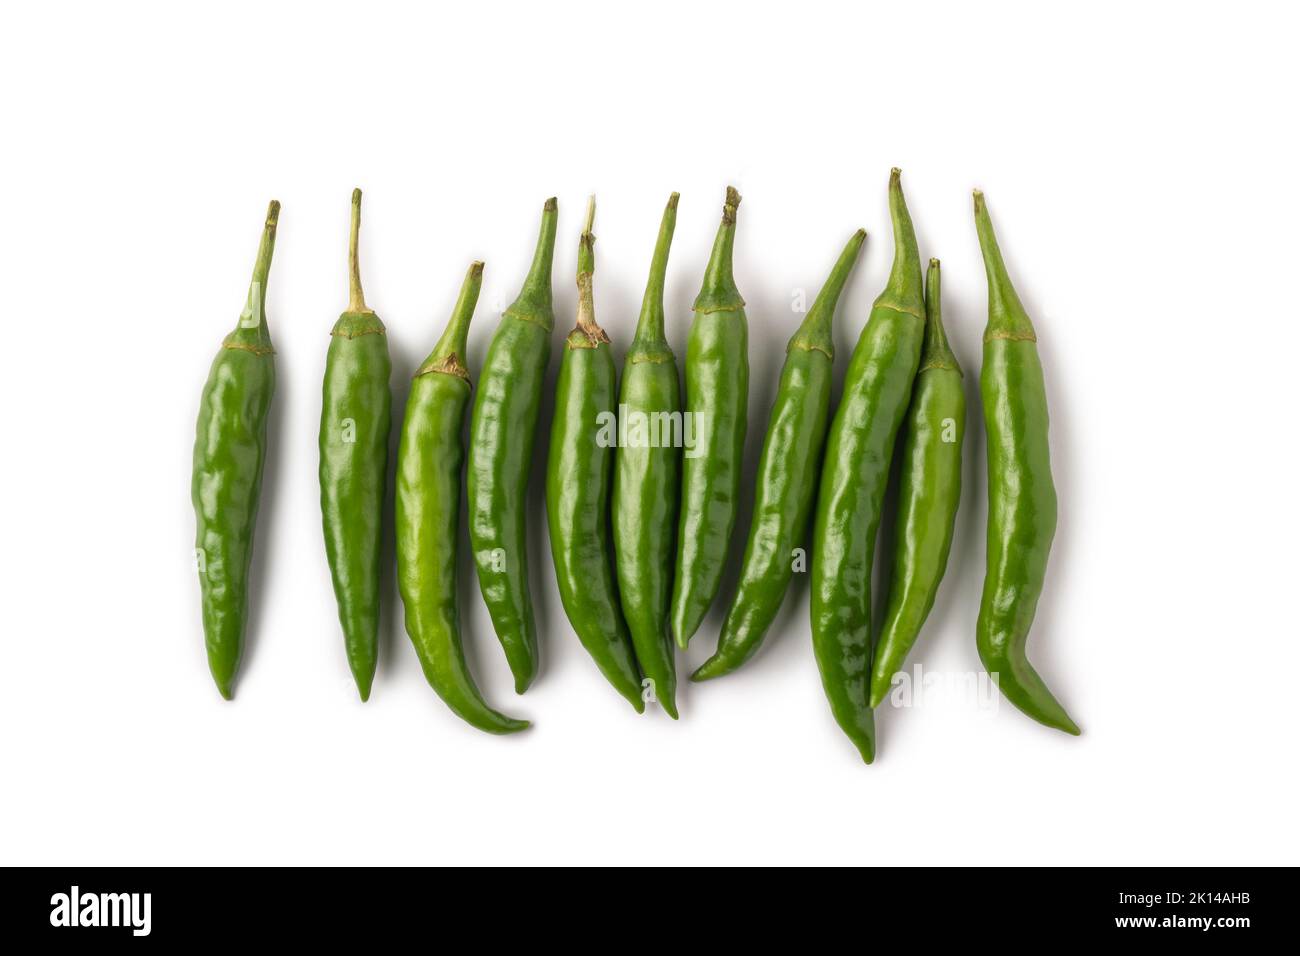 Bund von grünen Chilis isoliert auf weißem Hintergrund, gemeinsame Gemüse für ihren würzigen Geschmack verwendet Stockfoto